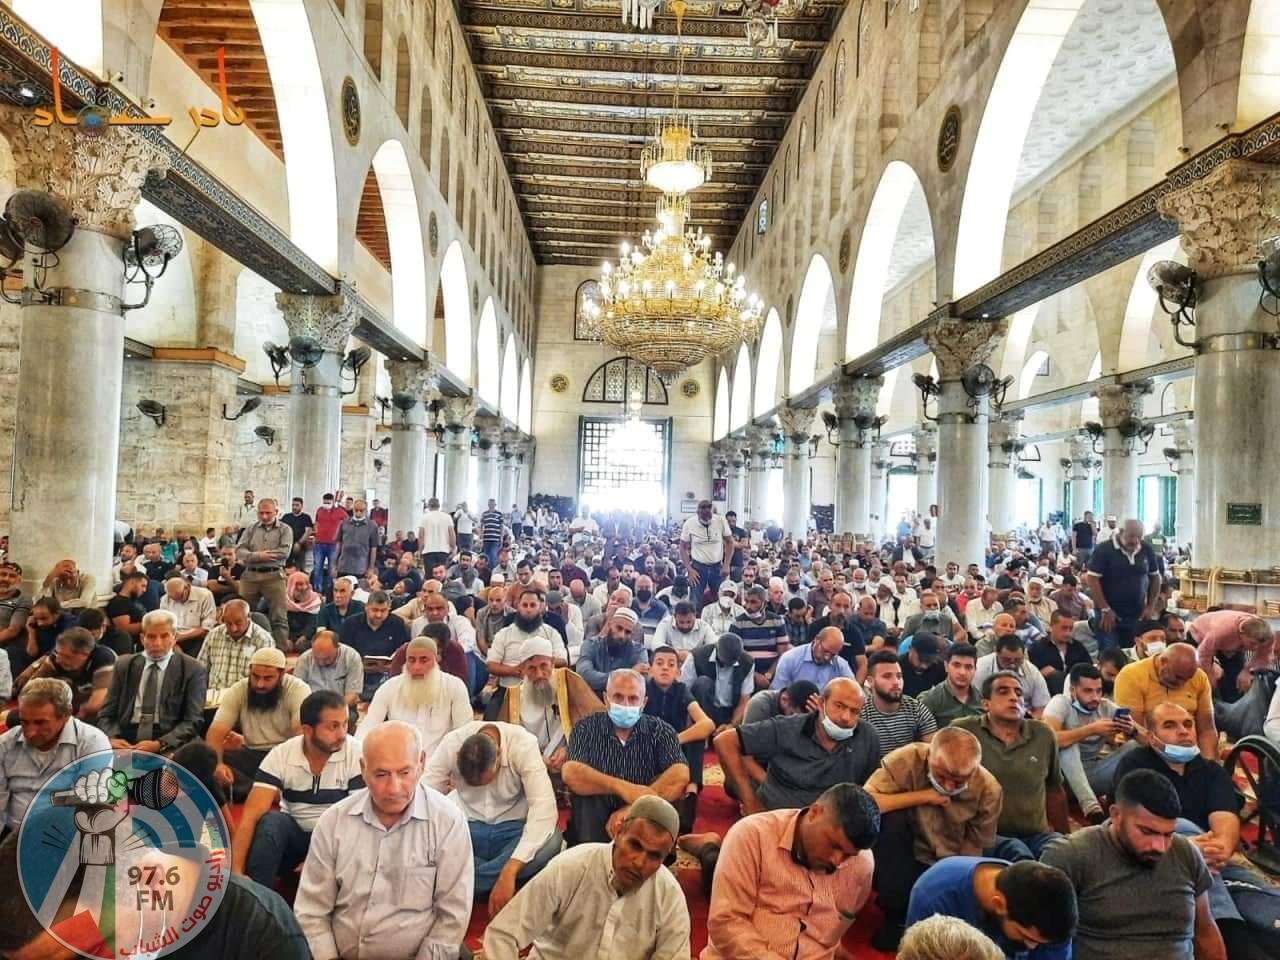 45 ألفا يؤدون الجمعة في المسجد الأقصى